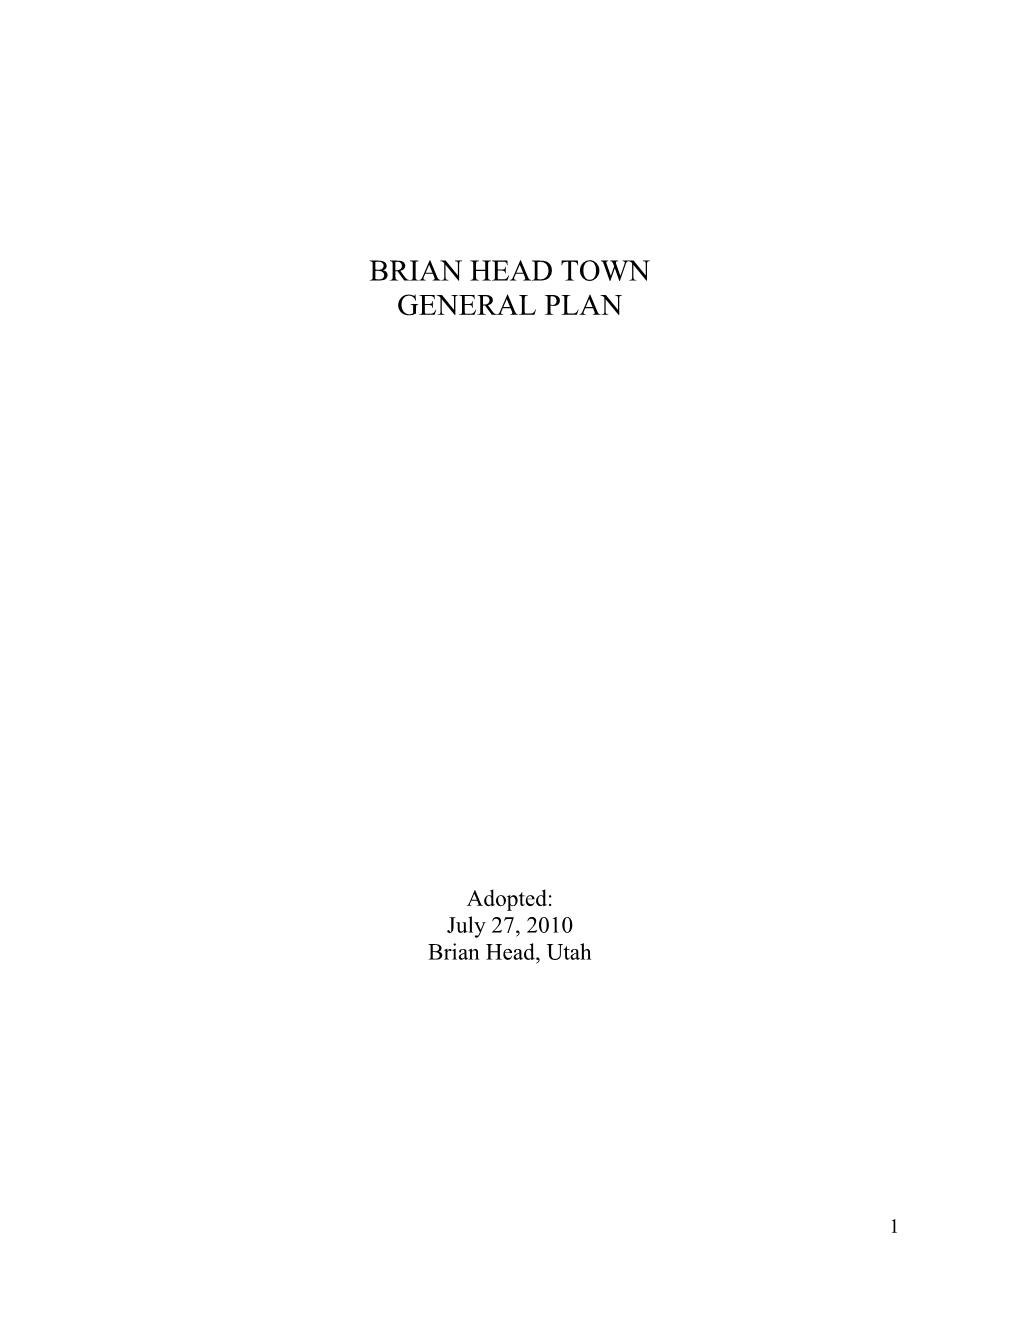 Brian Head Town General Plan (2010)